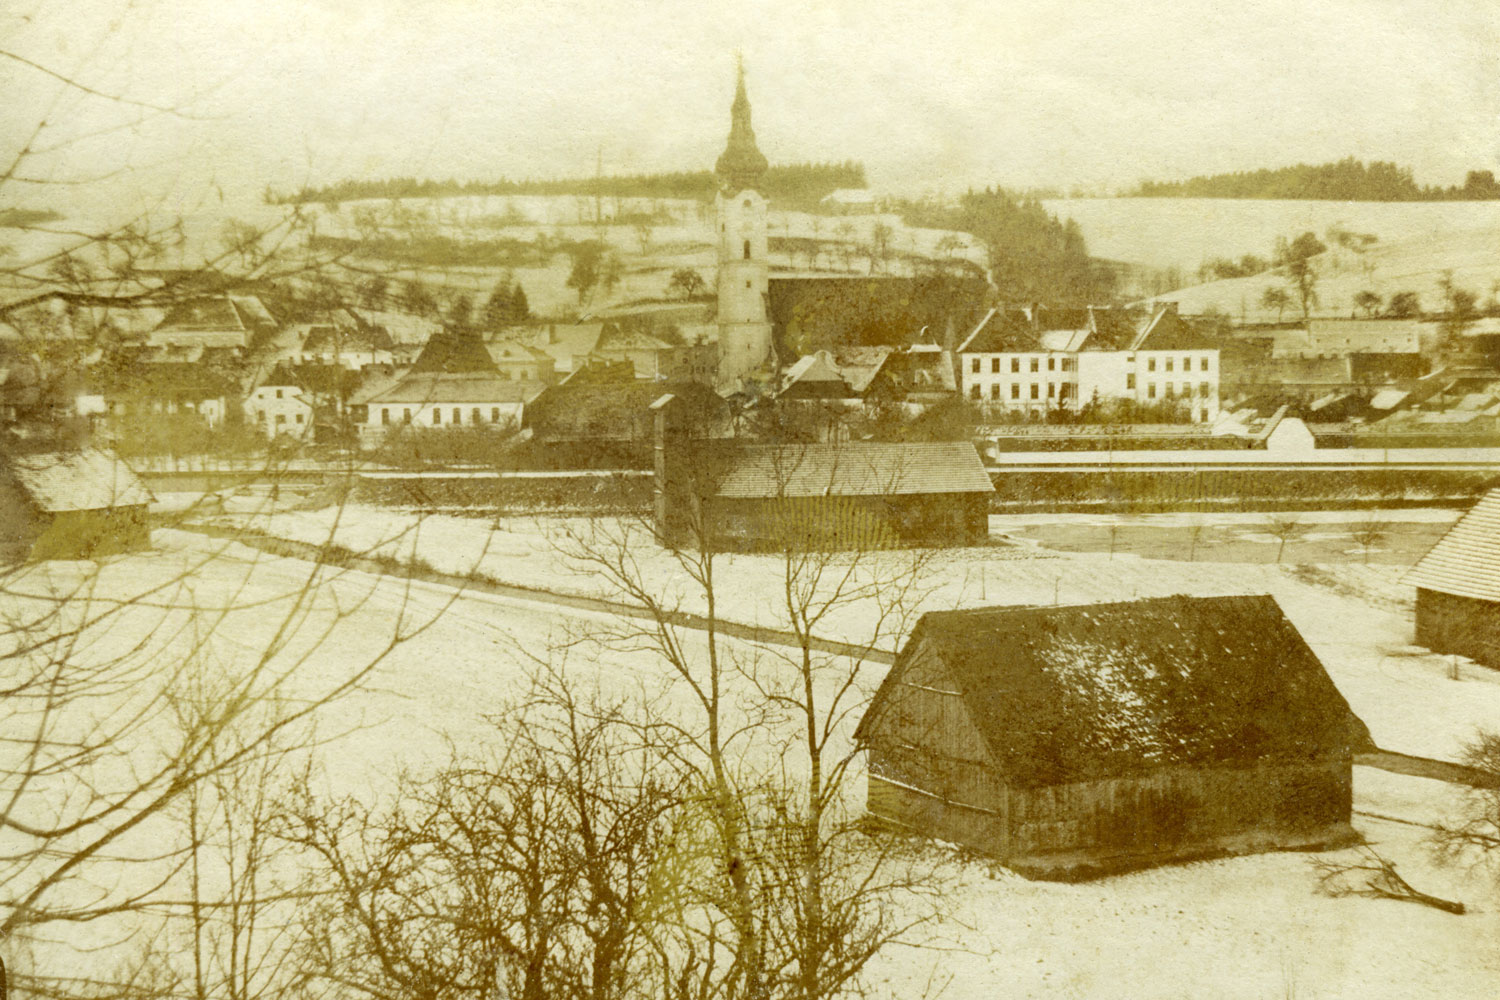 Davanti alla città prati e campi coltivati, in mezzo il fiume Trattnach, che portava spesso acqua alta: Grieskirchen nel XIX secolo